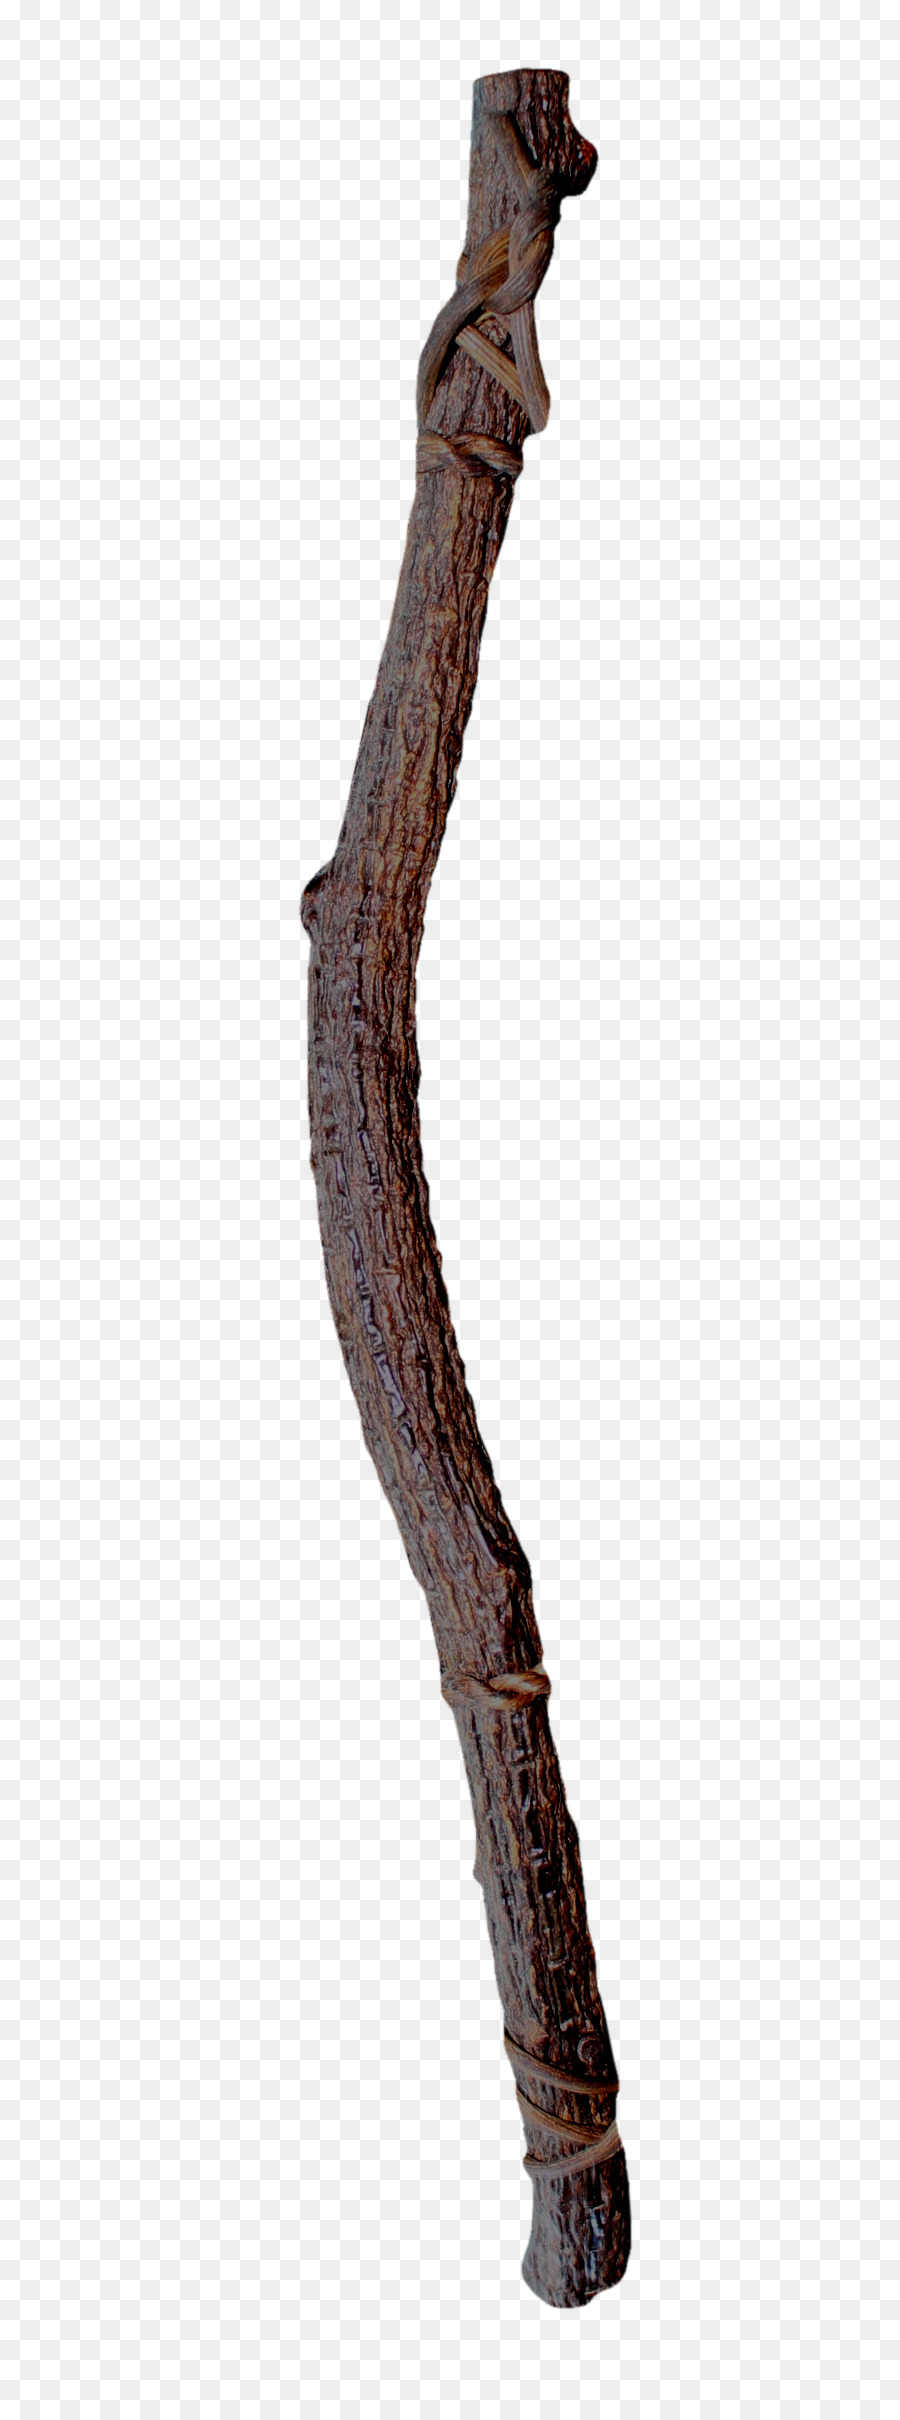 fotografia stock - marrone tronco d'albero